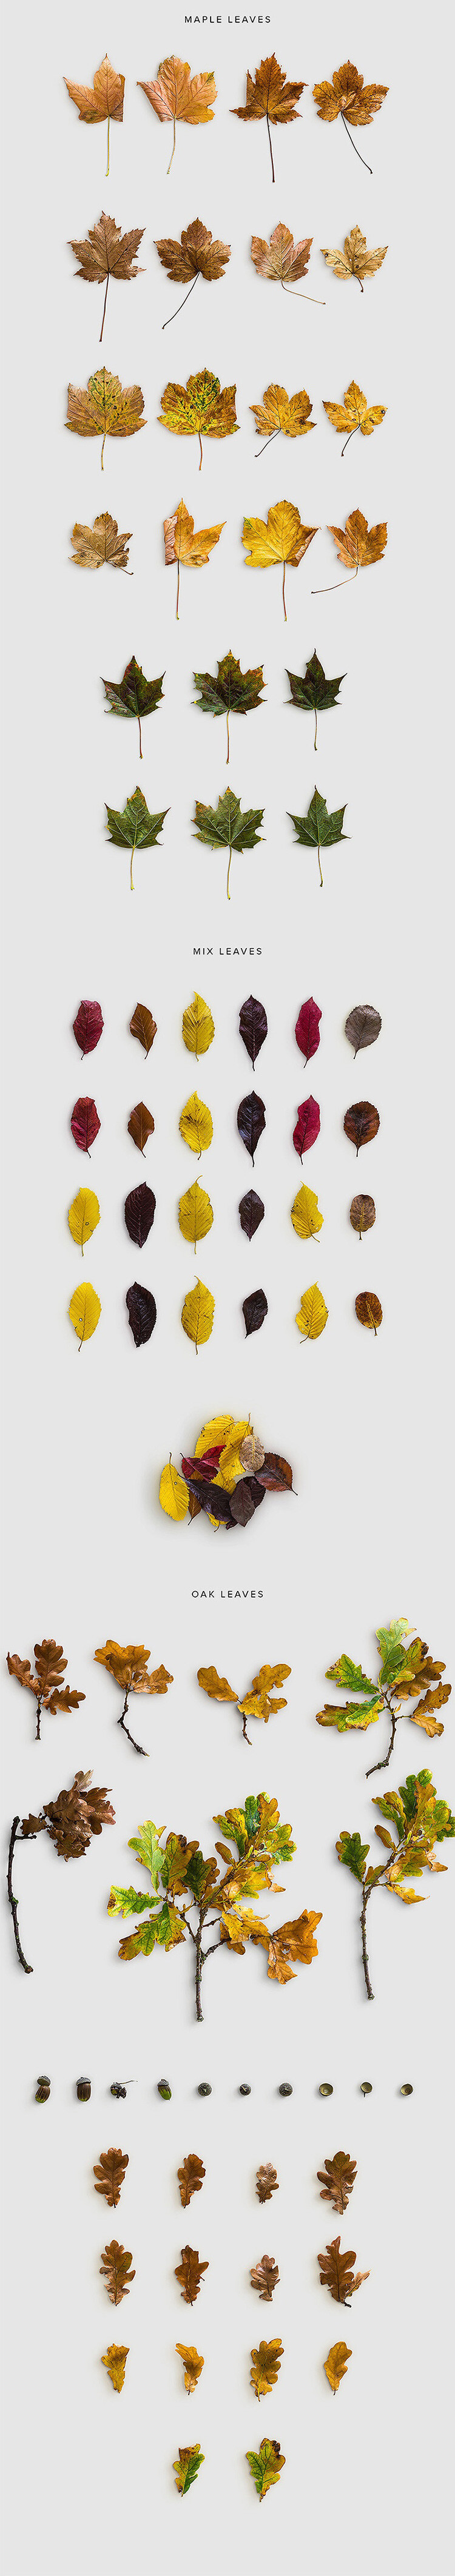 30 秋季枯枝树叶果实素材 PSD/PNG秋季平面设计广告设计素材